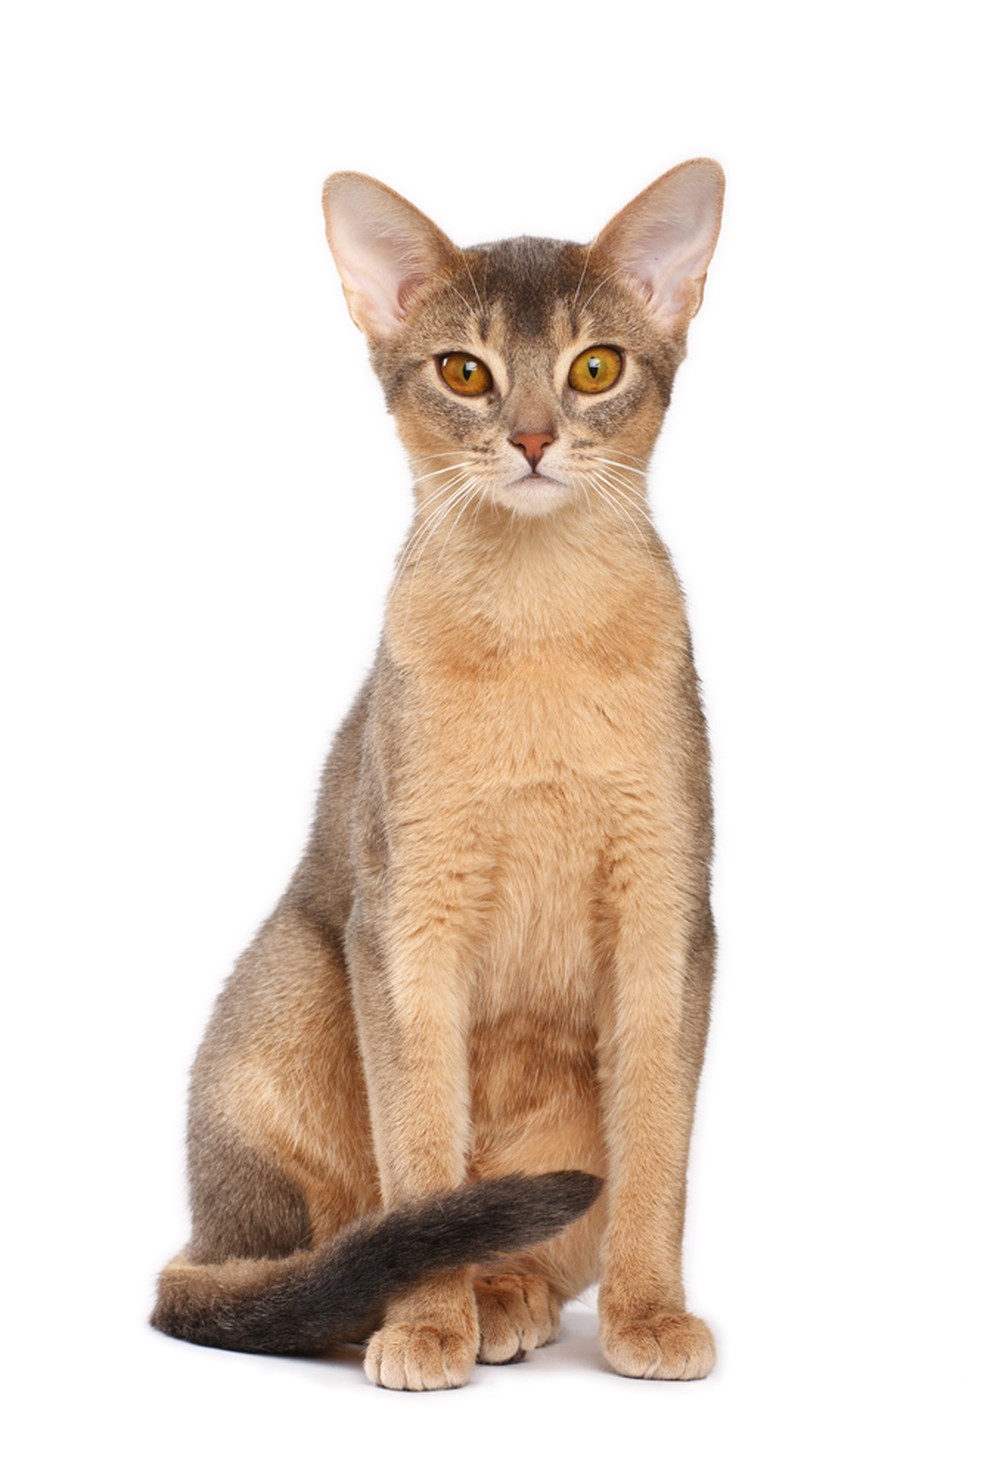 Os gatos participarão de um concurso de beleza felina, julgado por juízes convidados  — Foto: Shutterstock/Divulgação PremieRpet®